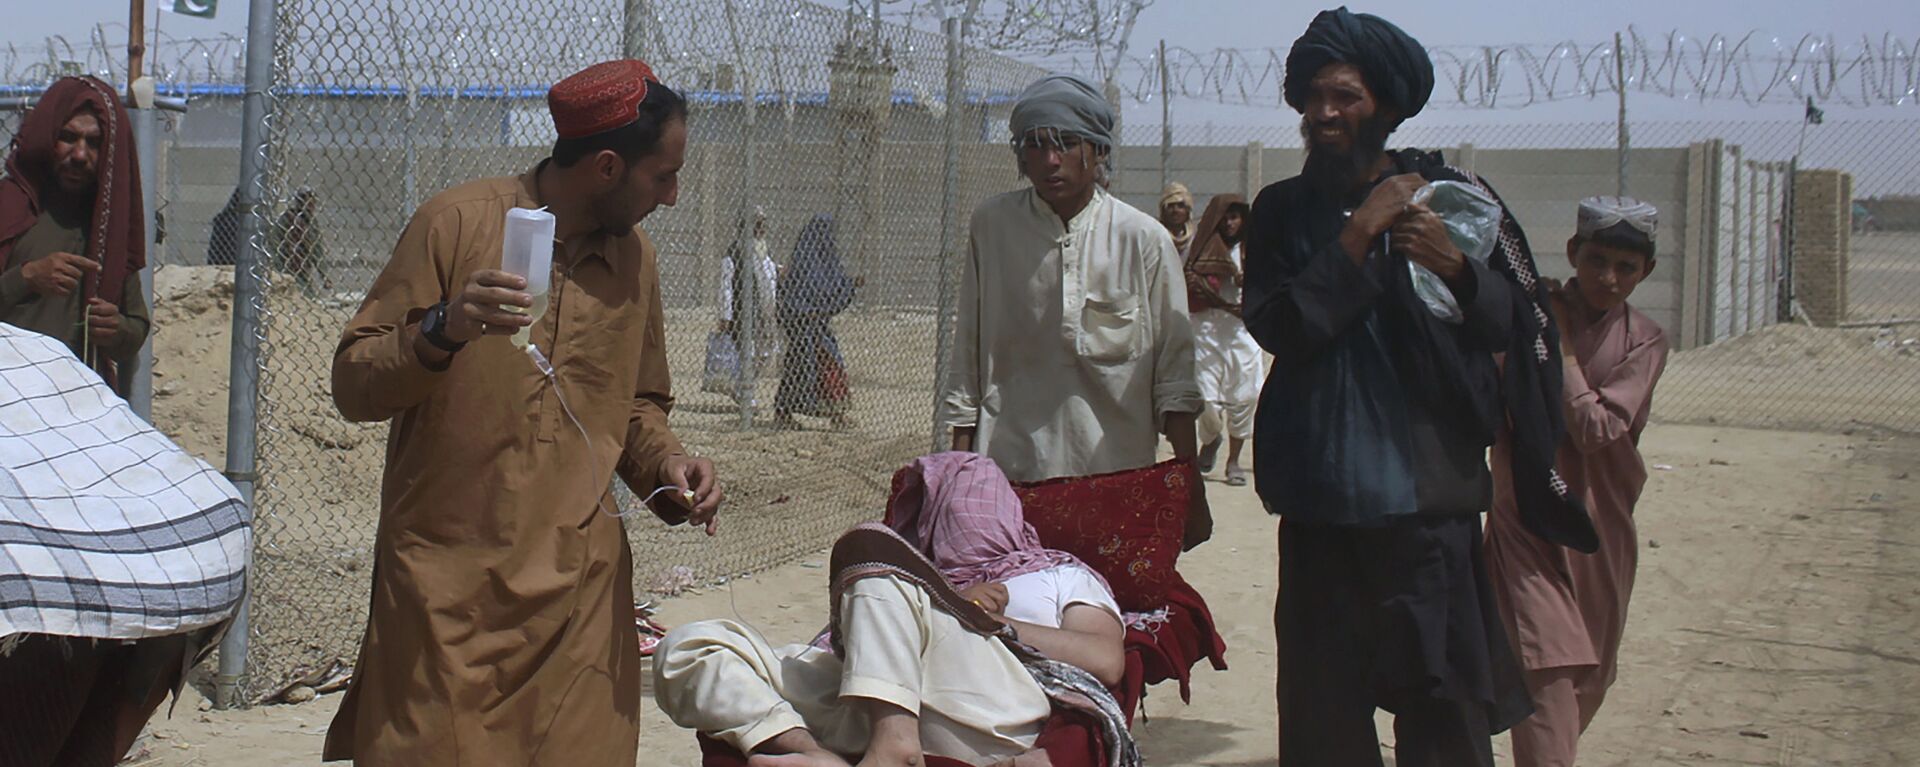 Афганские беженцы въезжают в Пакистан через пограничный переход в Чамане - Sputnik Ўзбекистон, 1920, 26.08.2021